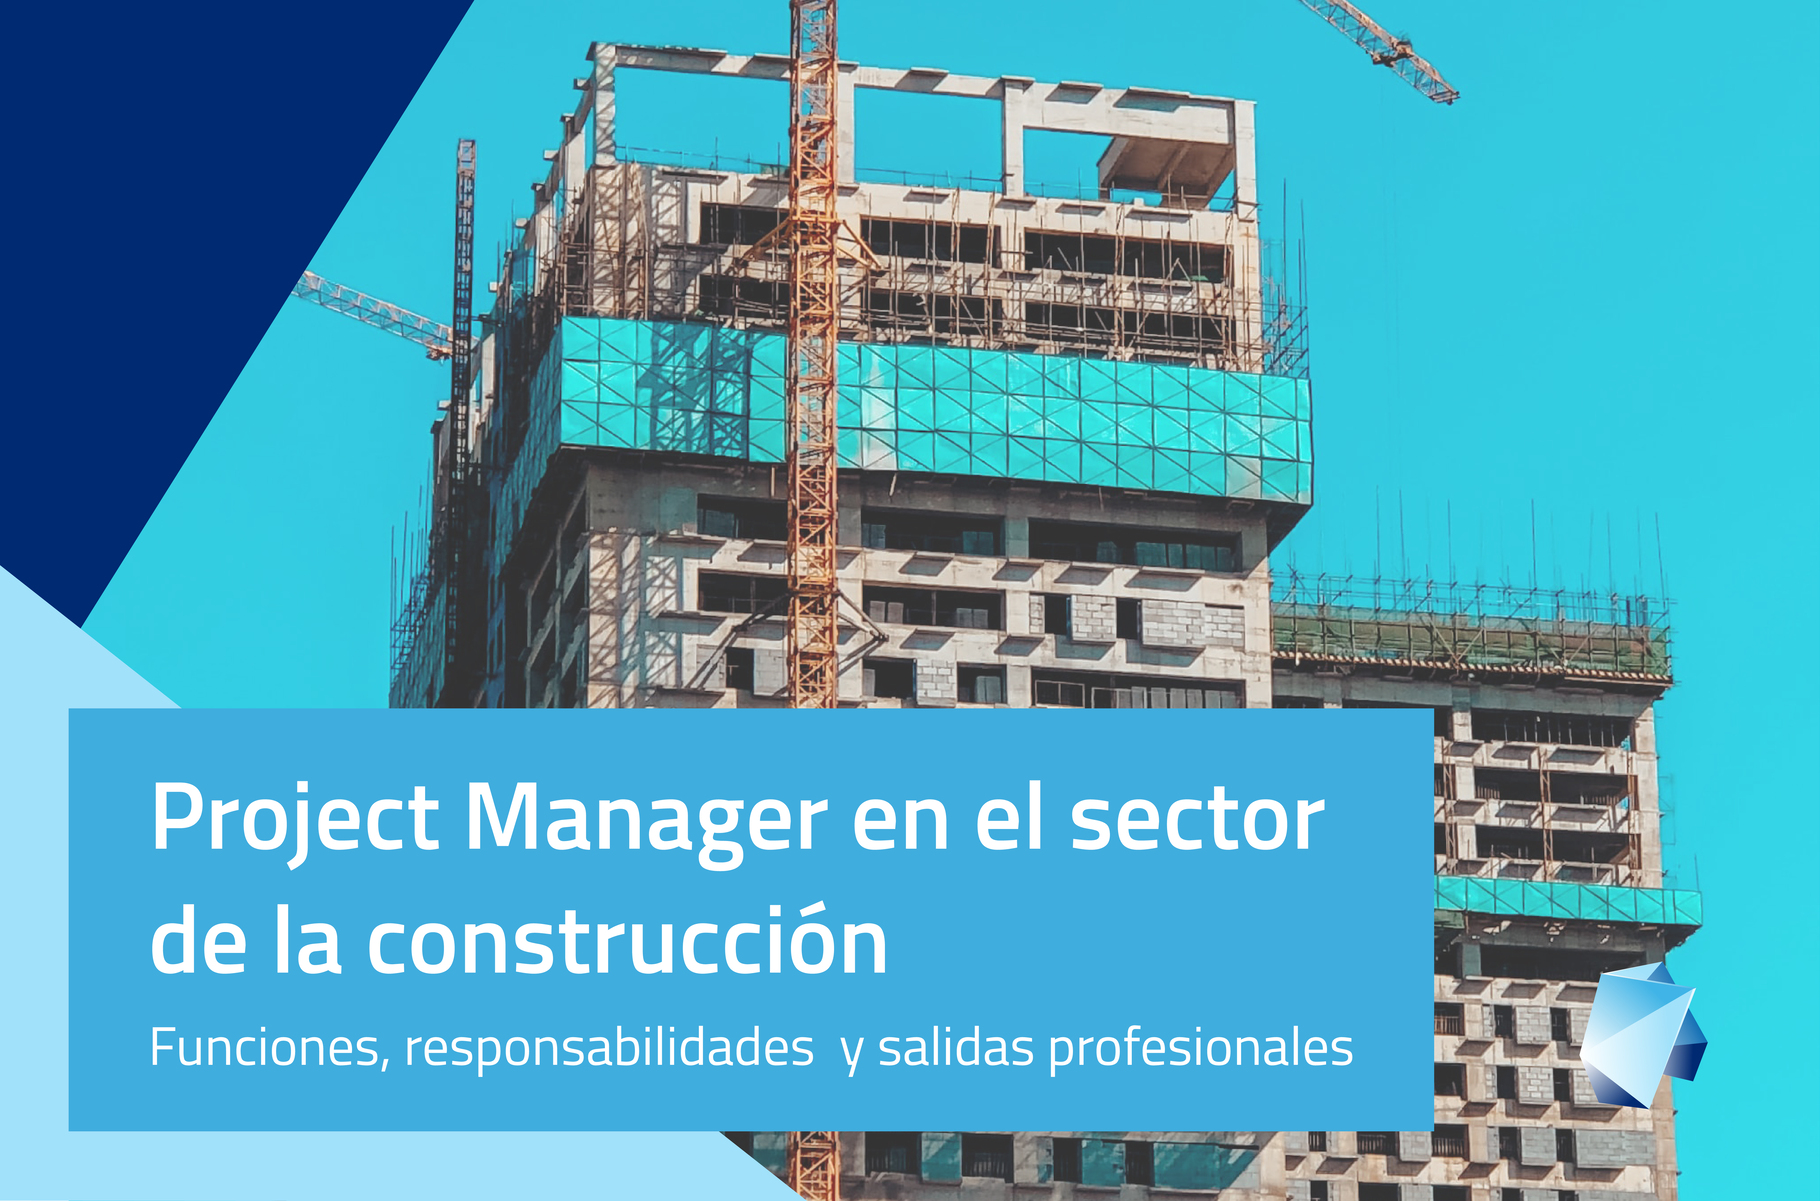 Project manager en el sector de la construcción